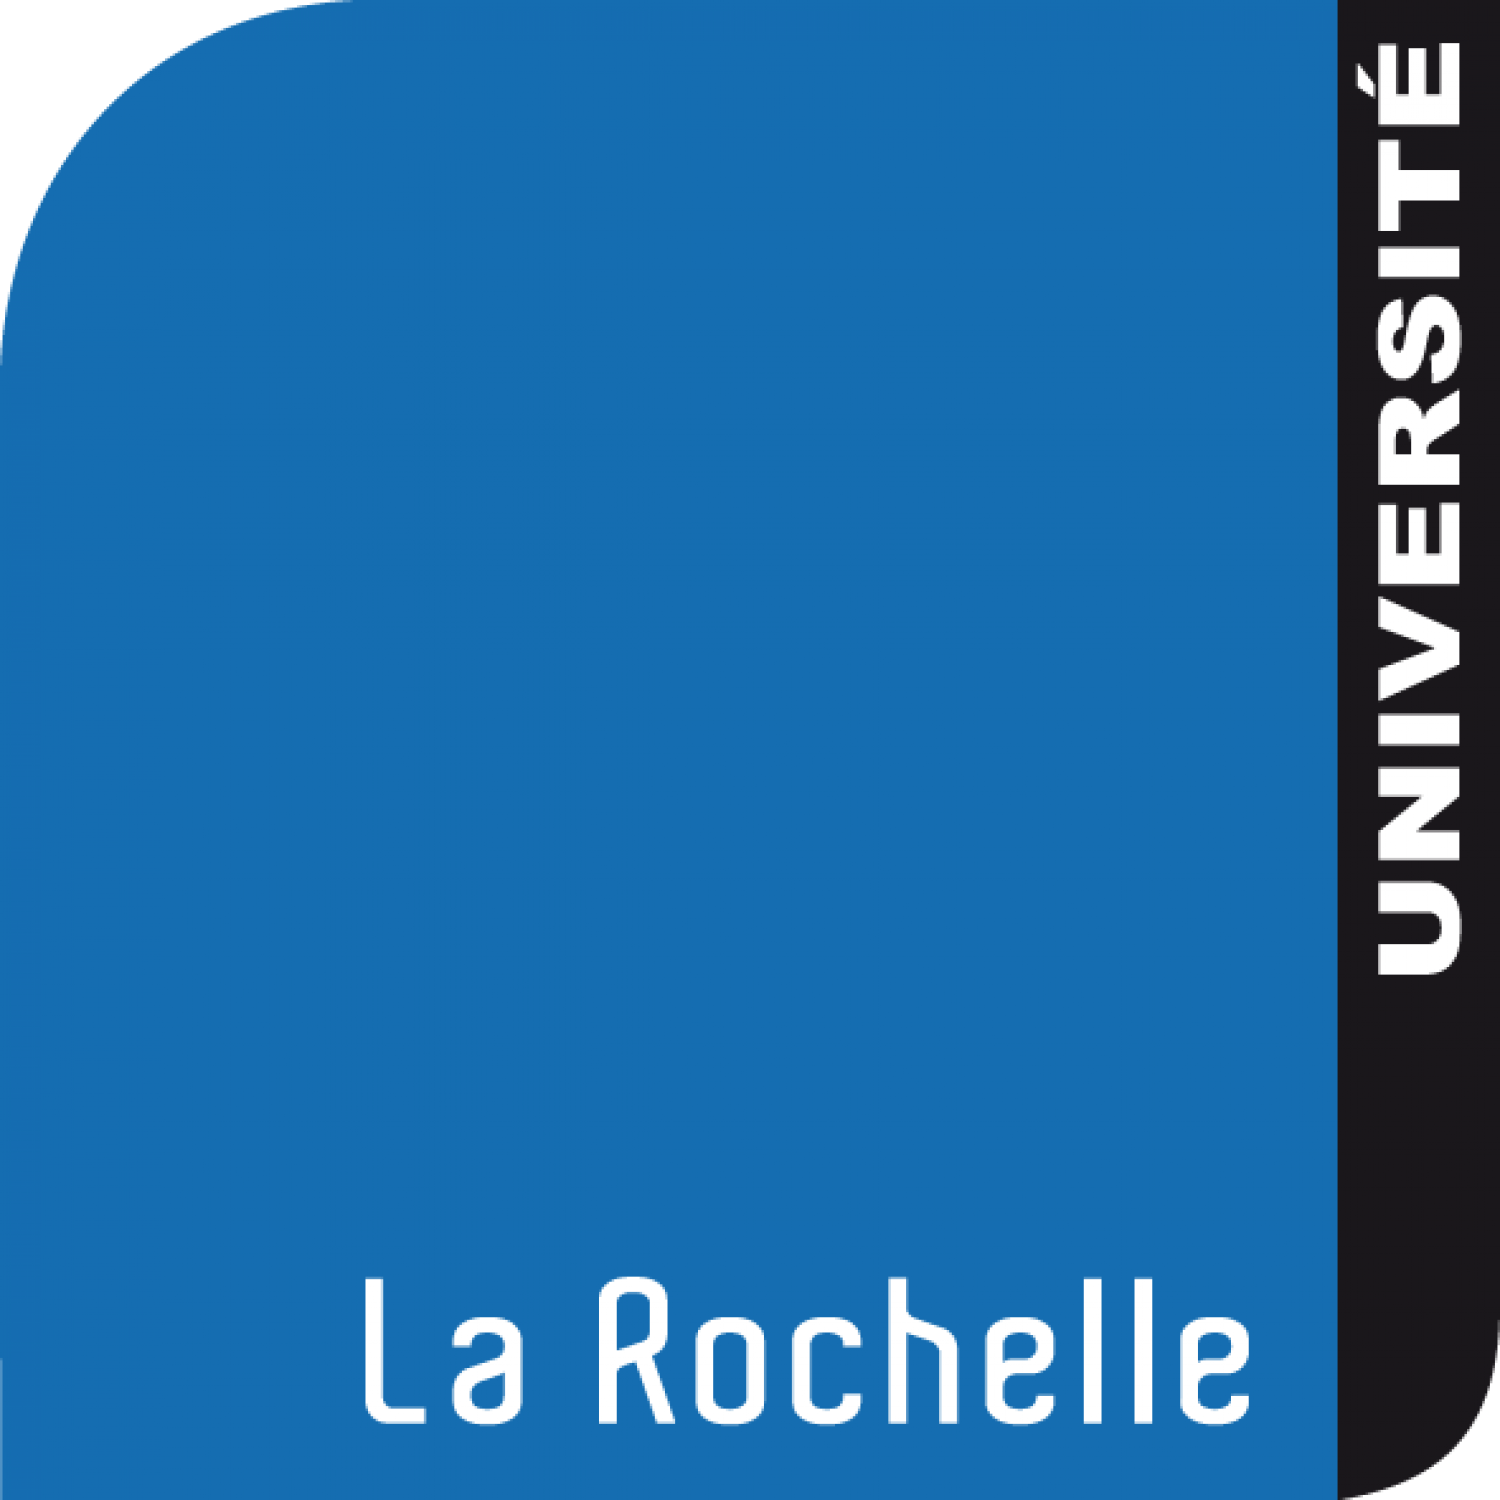 ERENA Limoges Université de La Rochelle